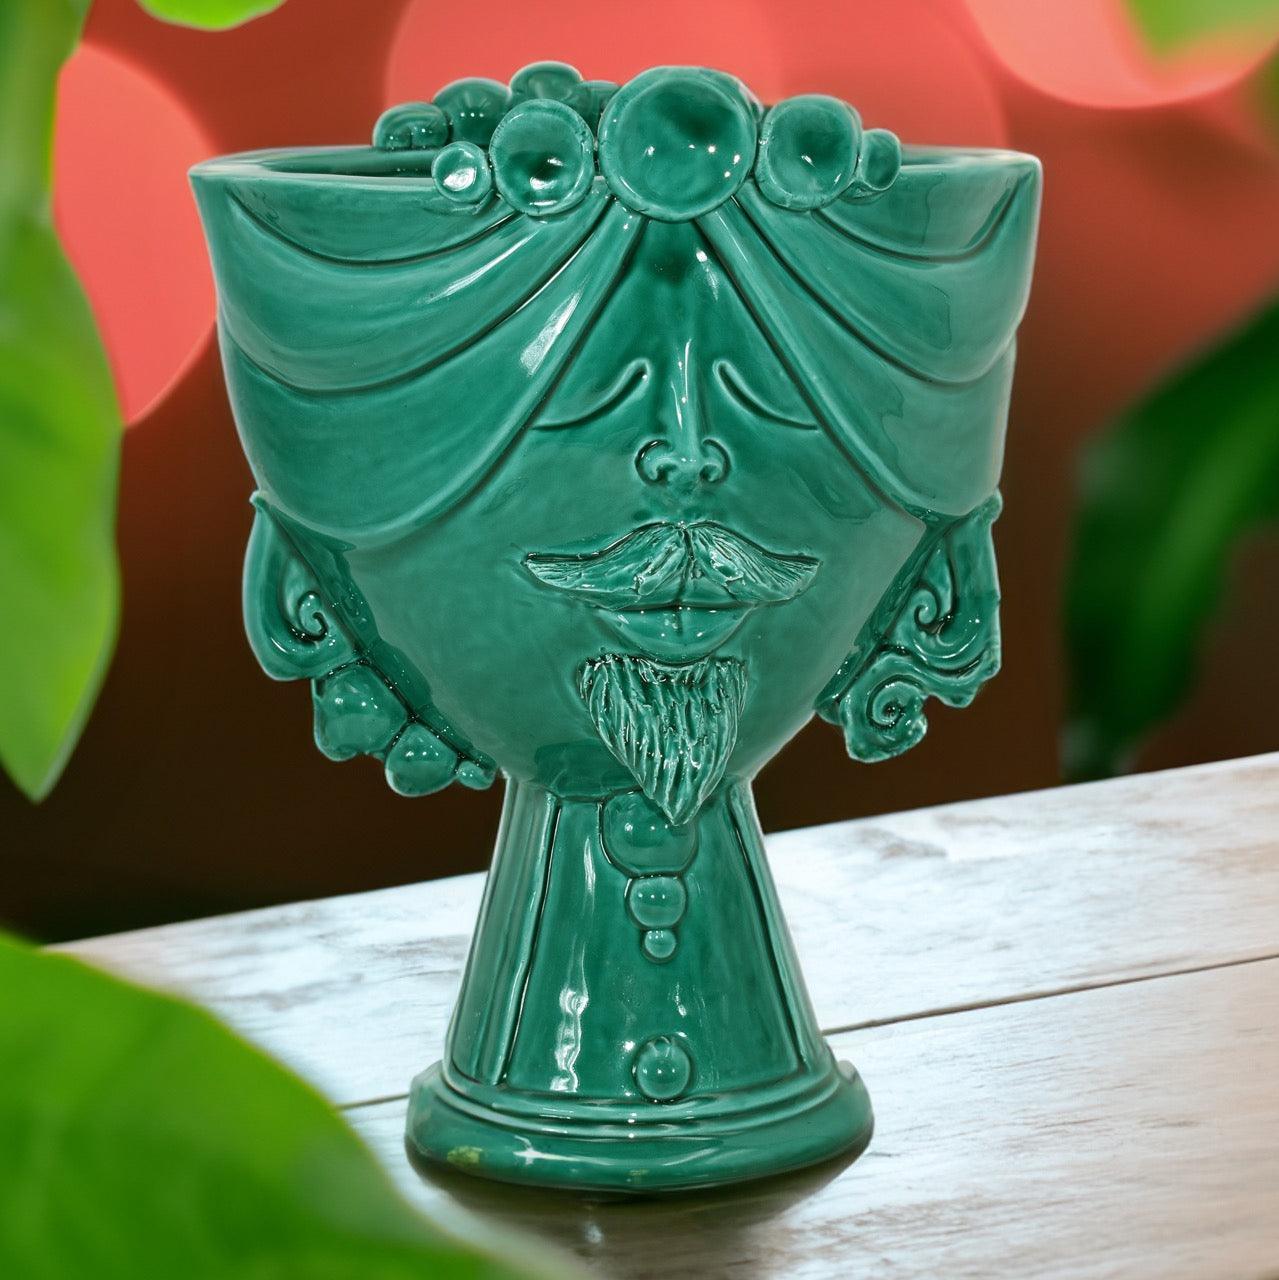 Testa Uomo in Ceramica Caltagirone | Zahira Verde Smeraldo 30cm - Ceramiche di Caltagirone Sofia